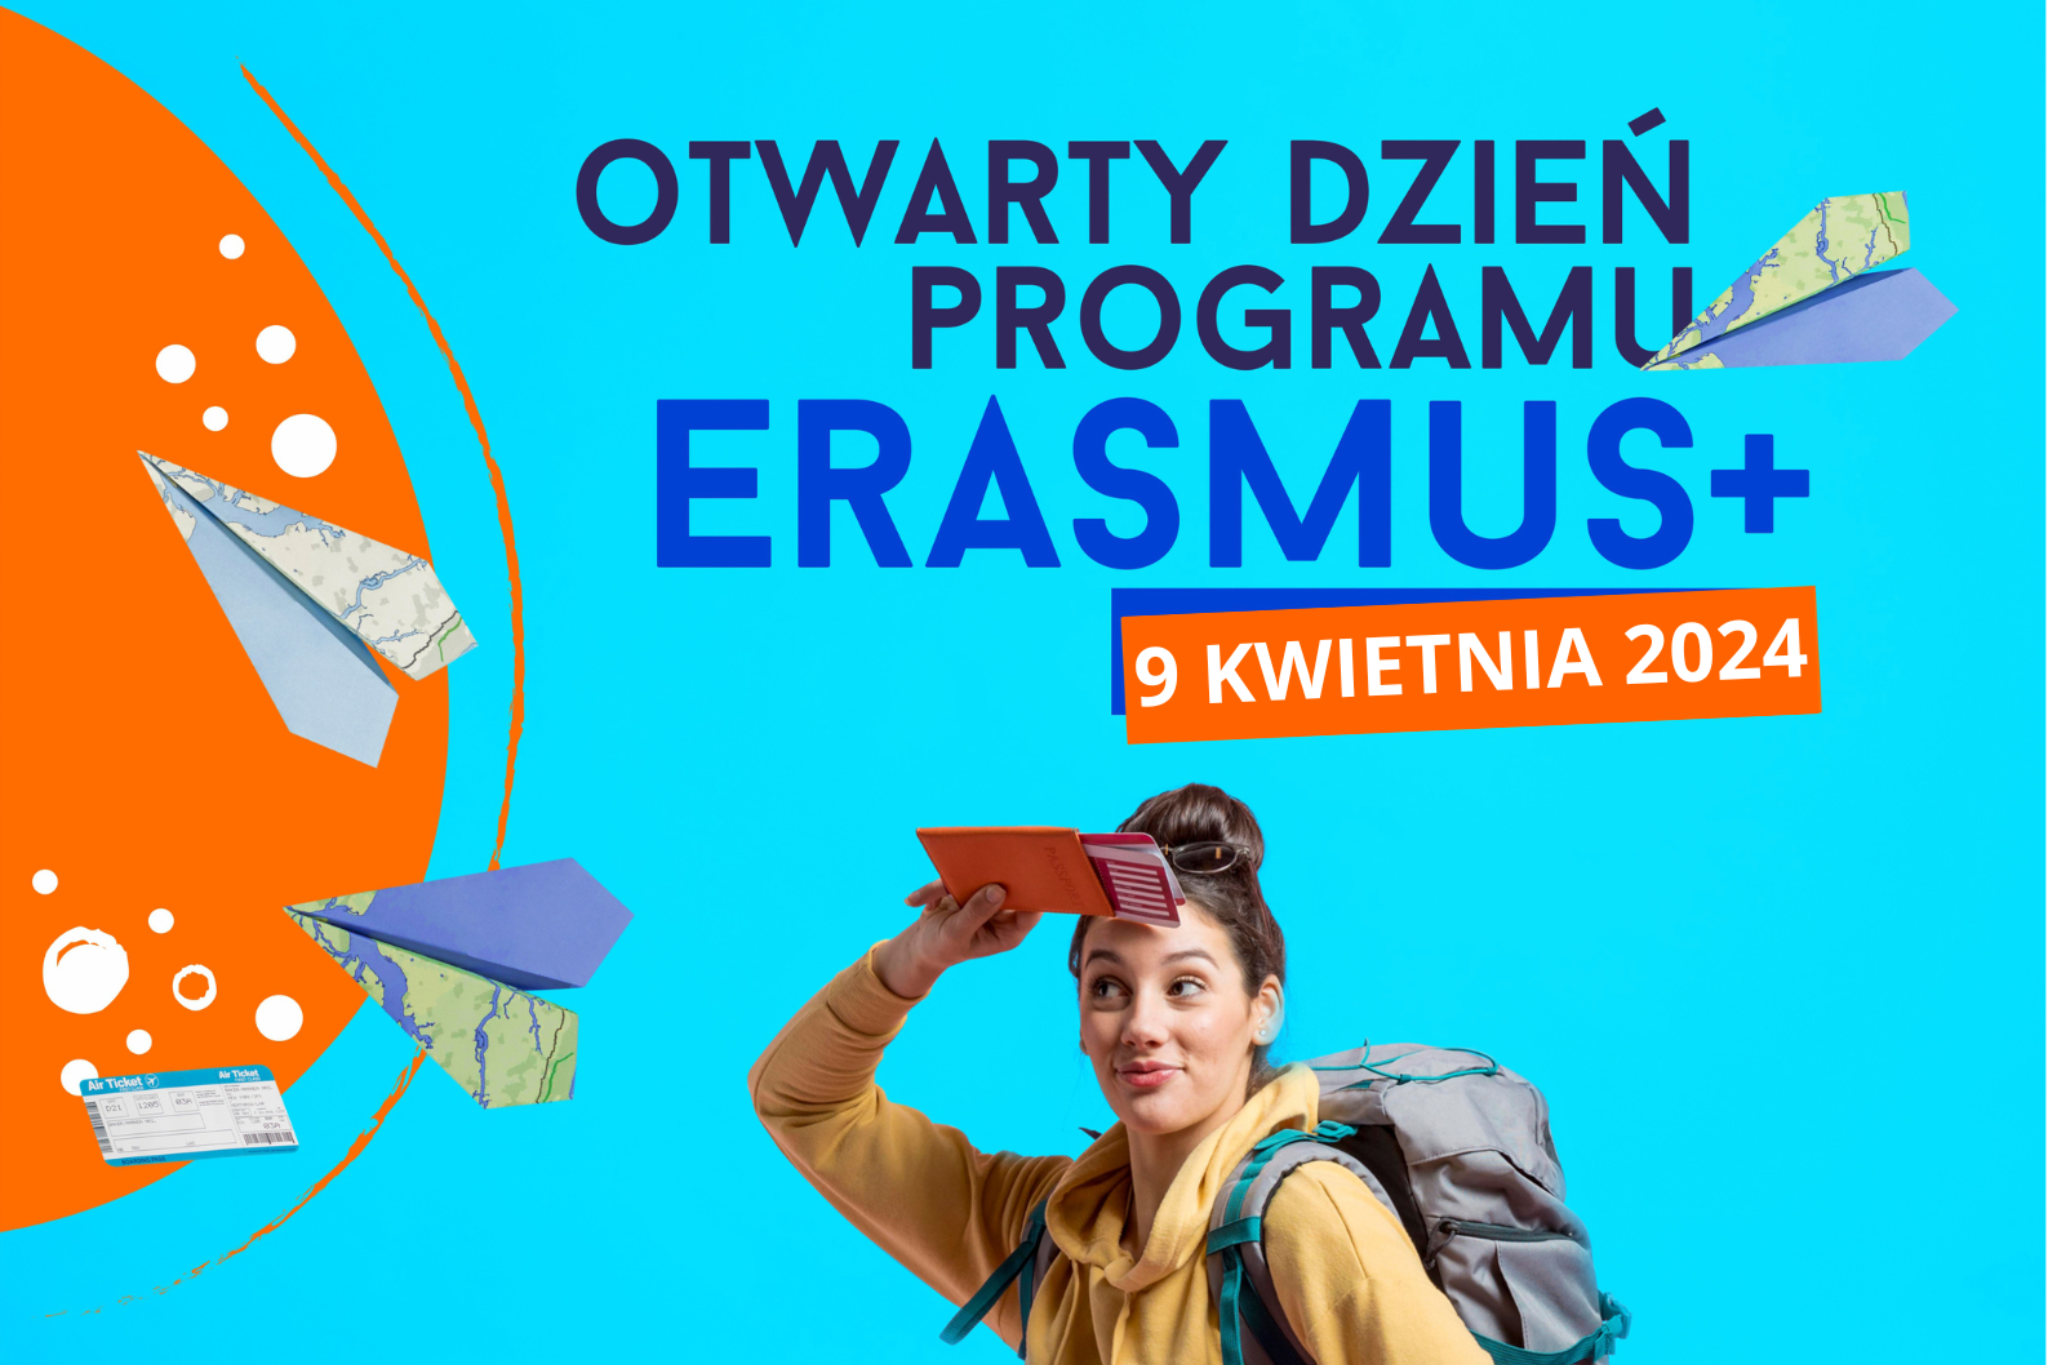 Na górze napis Otwarty dzień Programu Erasmus+, na dole grafiki kobieta z paszportem i biletami w rękach